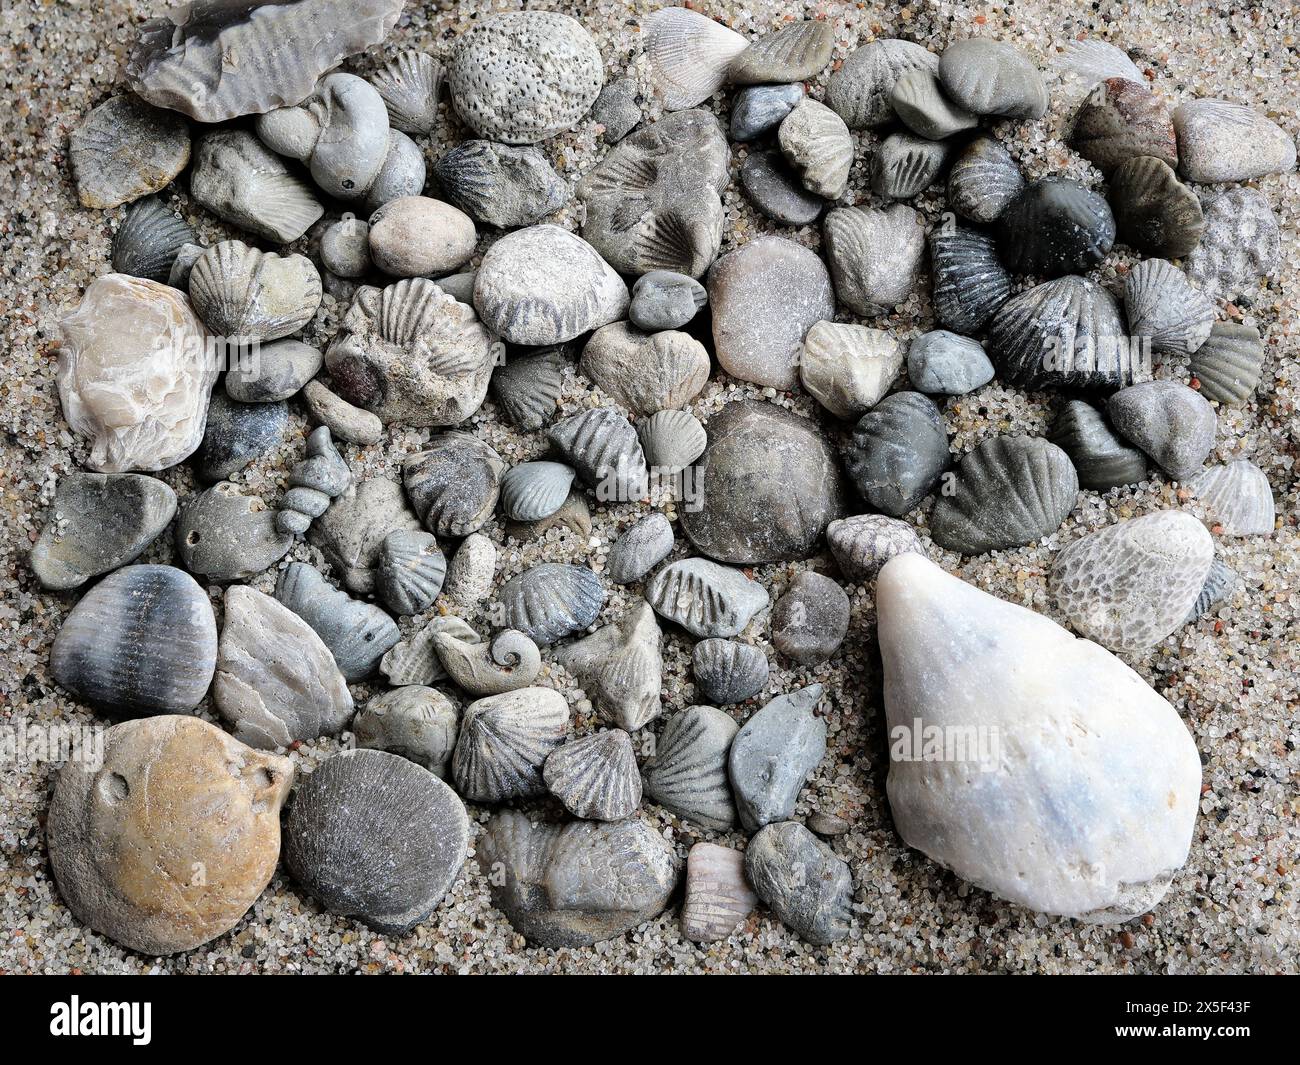 Tesori fossili del Mar Baltico: Conchiglie pietrificate e coralli marini che ricordano antichi misteri. Ideale per collezionisti e decorazioni. Foto Stock